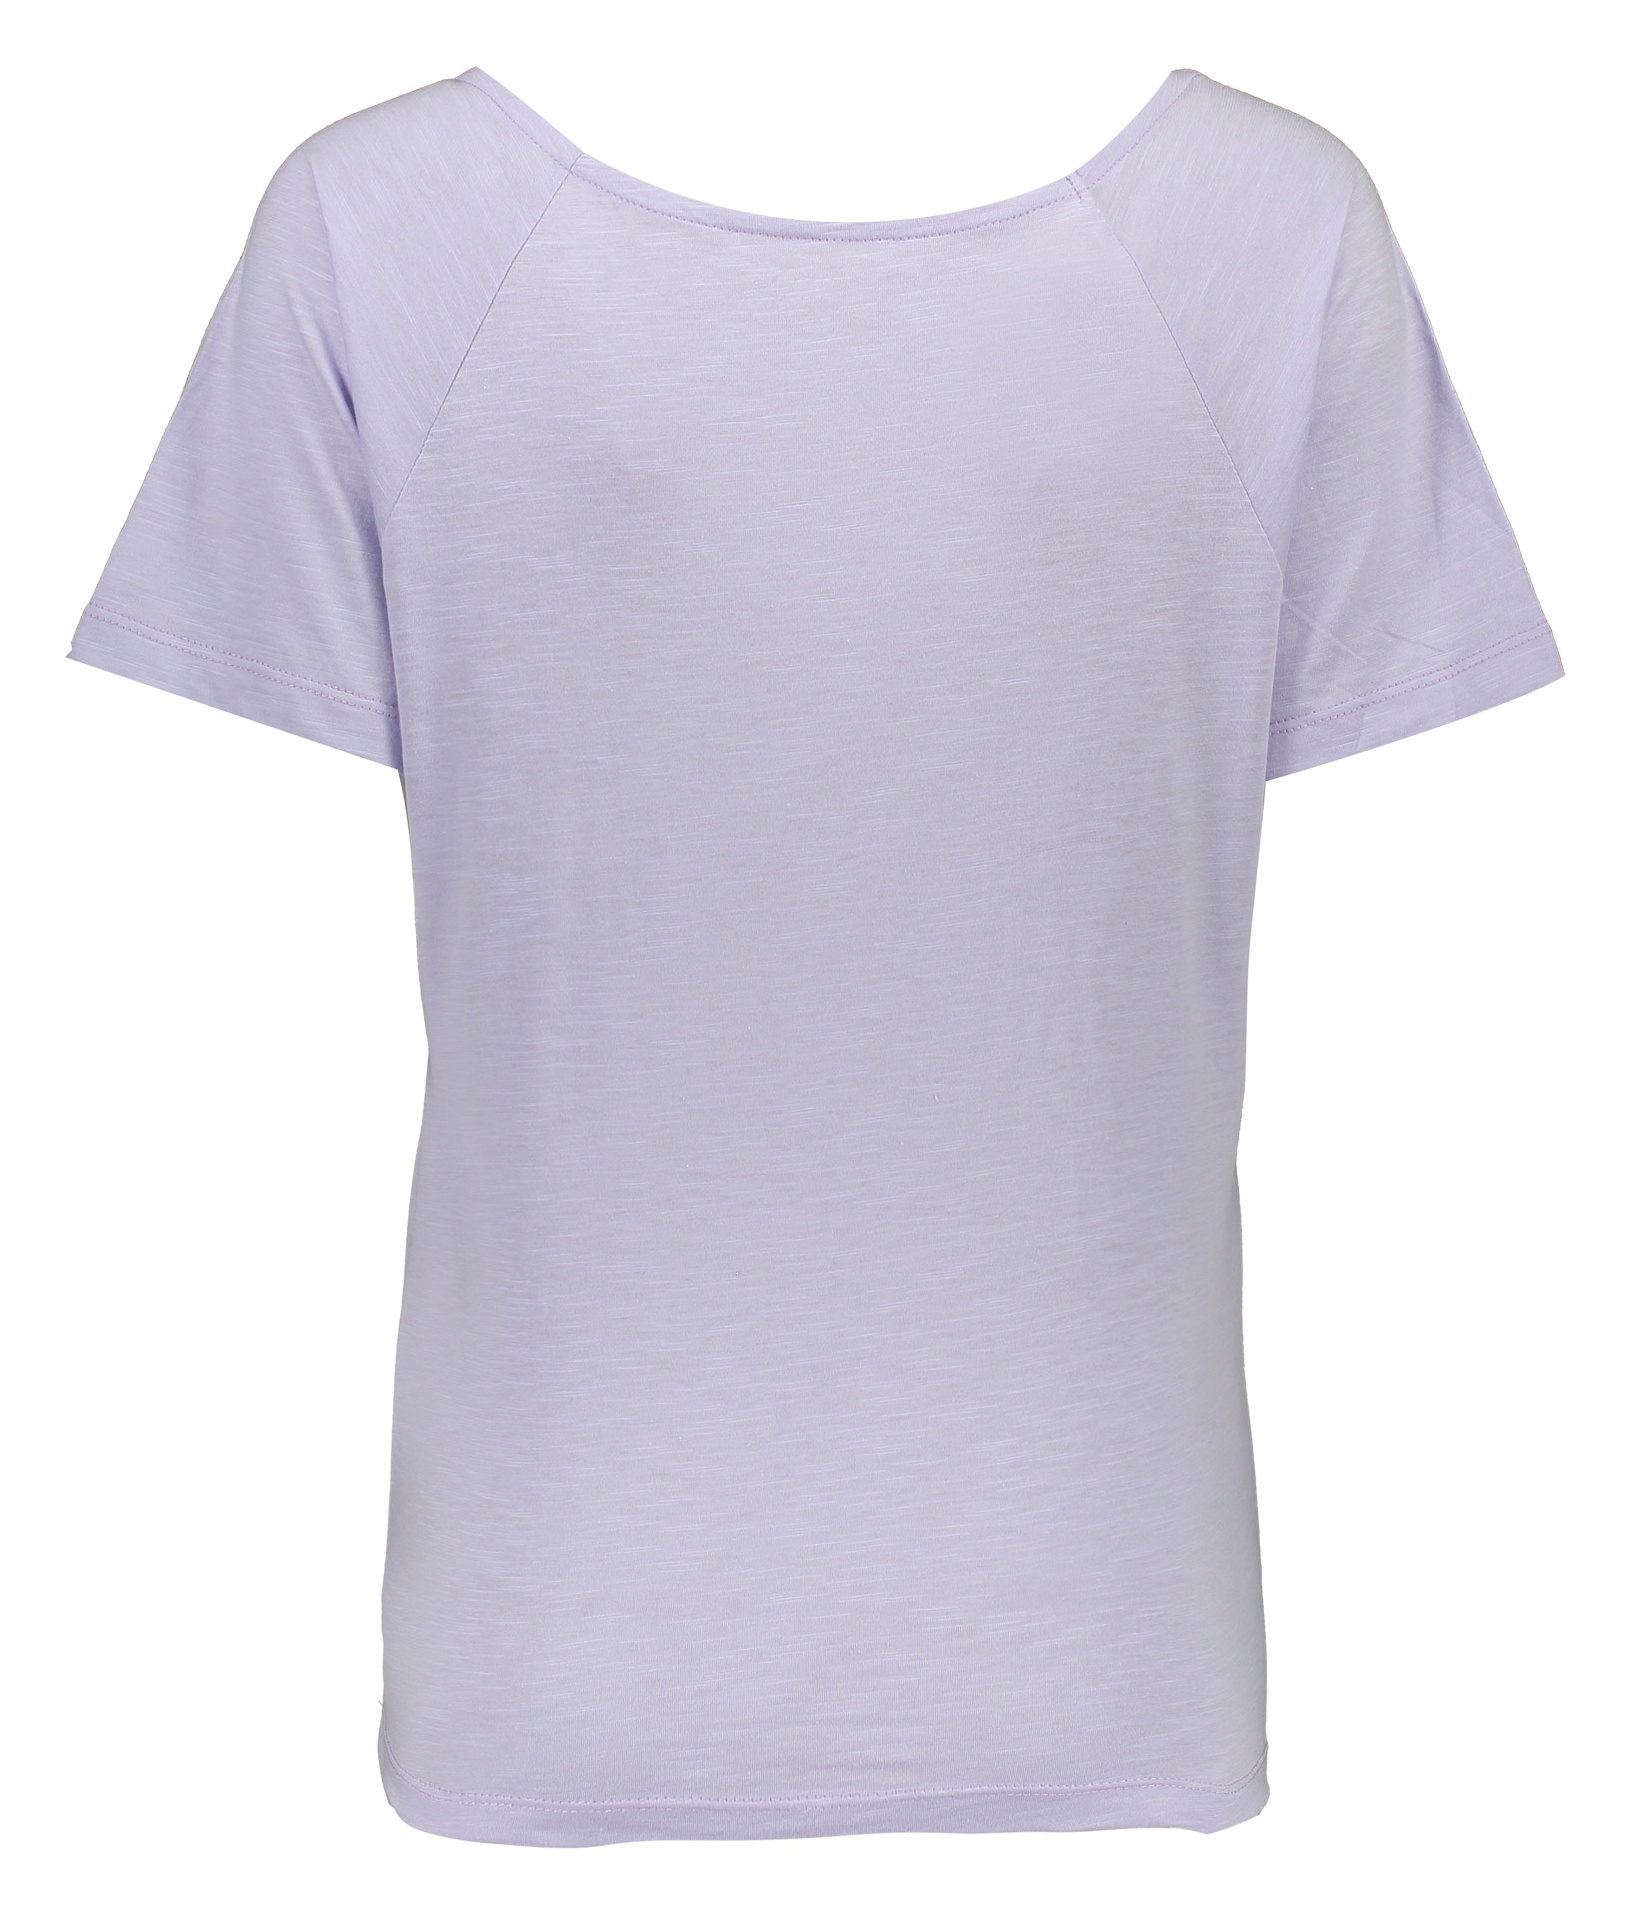 تی شرت زنانه گارودی مدل 1003104023-64 -  - 5